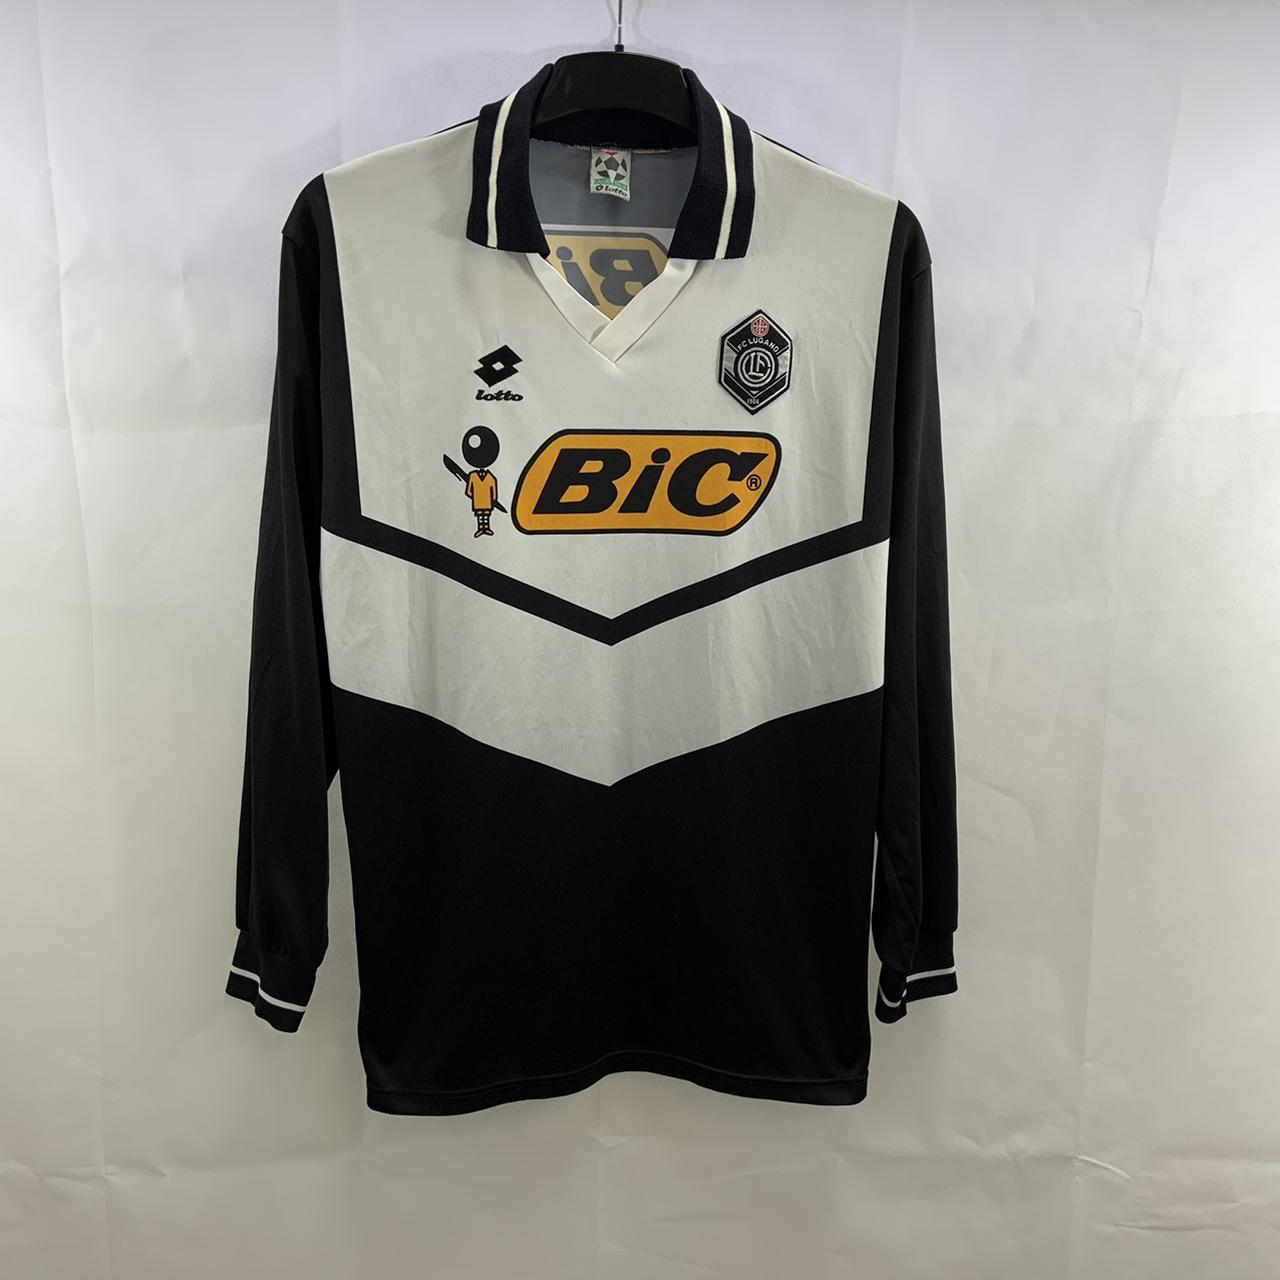 T-Shirt Football Club Lugano black - Online Shop FC Lugano